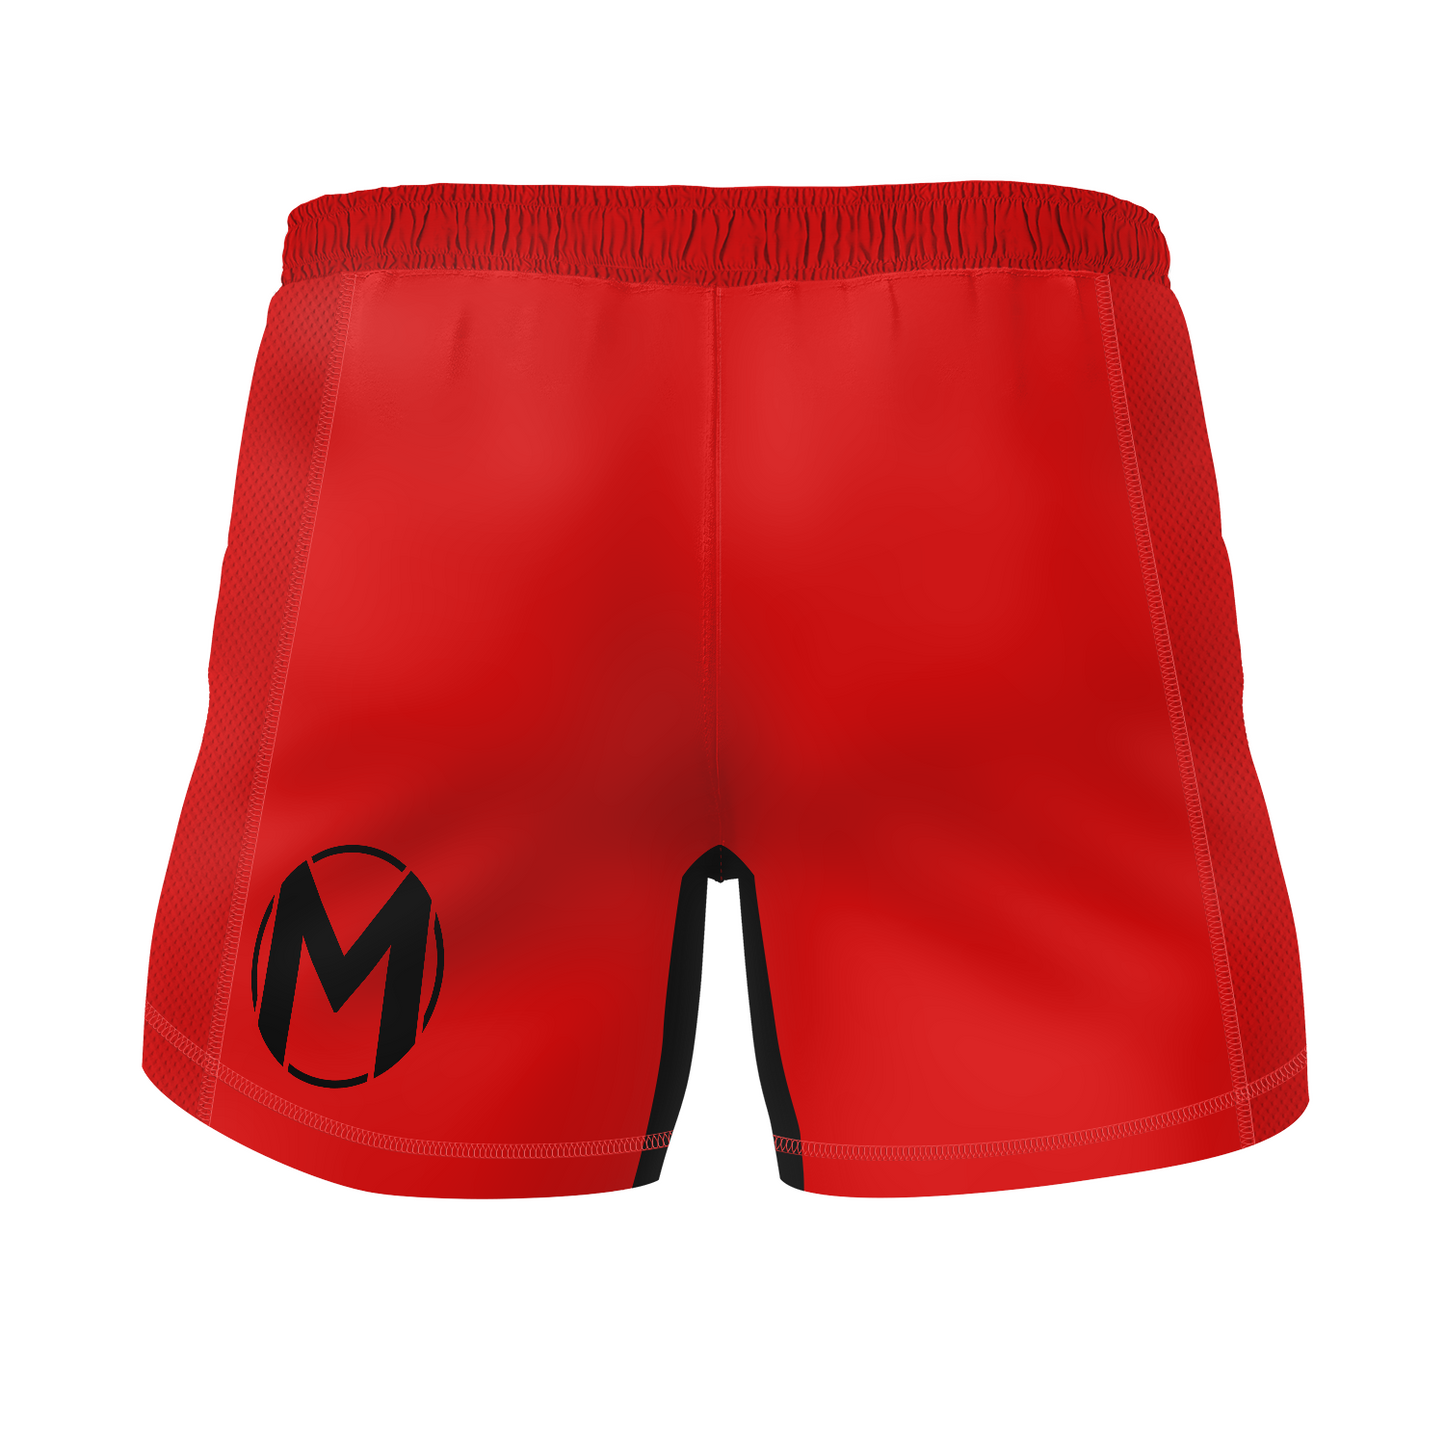 Magness Jiu JItsu men's fight shorts 10 Years, red